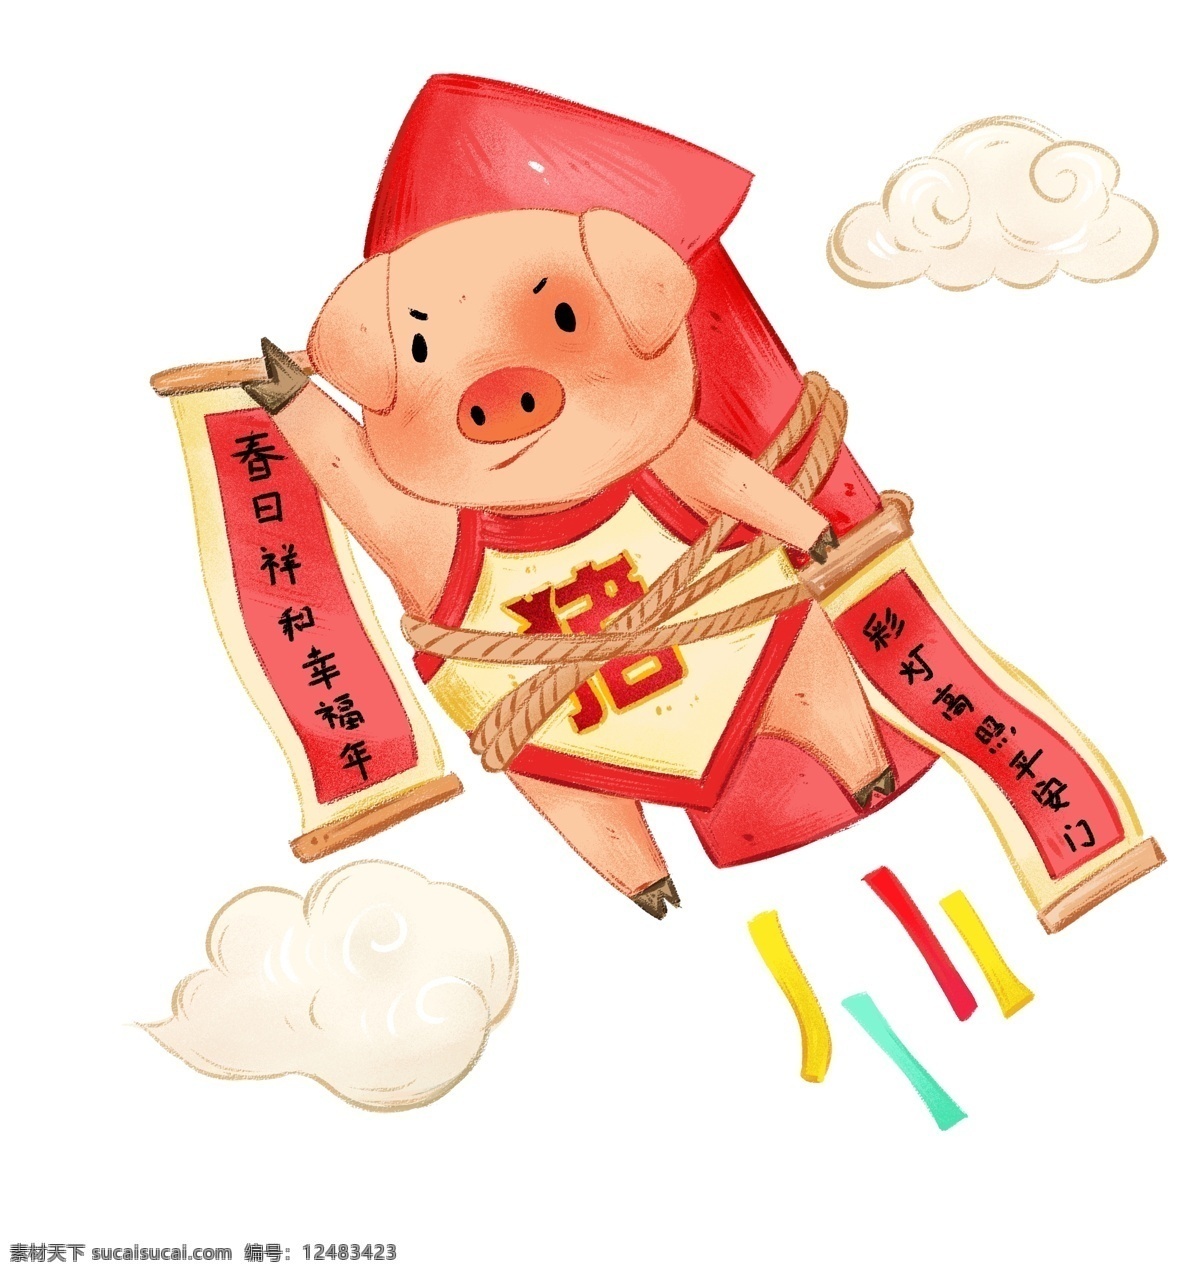 飞天 小 猪 对联 插画 新年 中国年 新春 过大年 春节 小猪宝宝 可爱小猪 吉祥小猪 手绘 祥云 飞天小猪